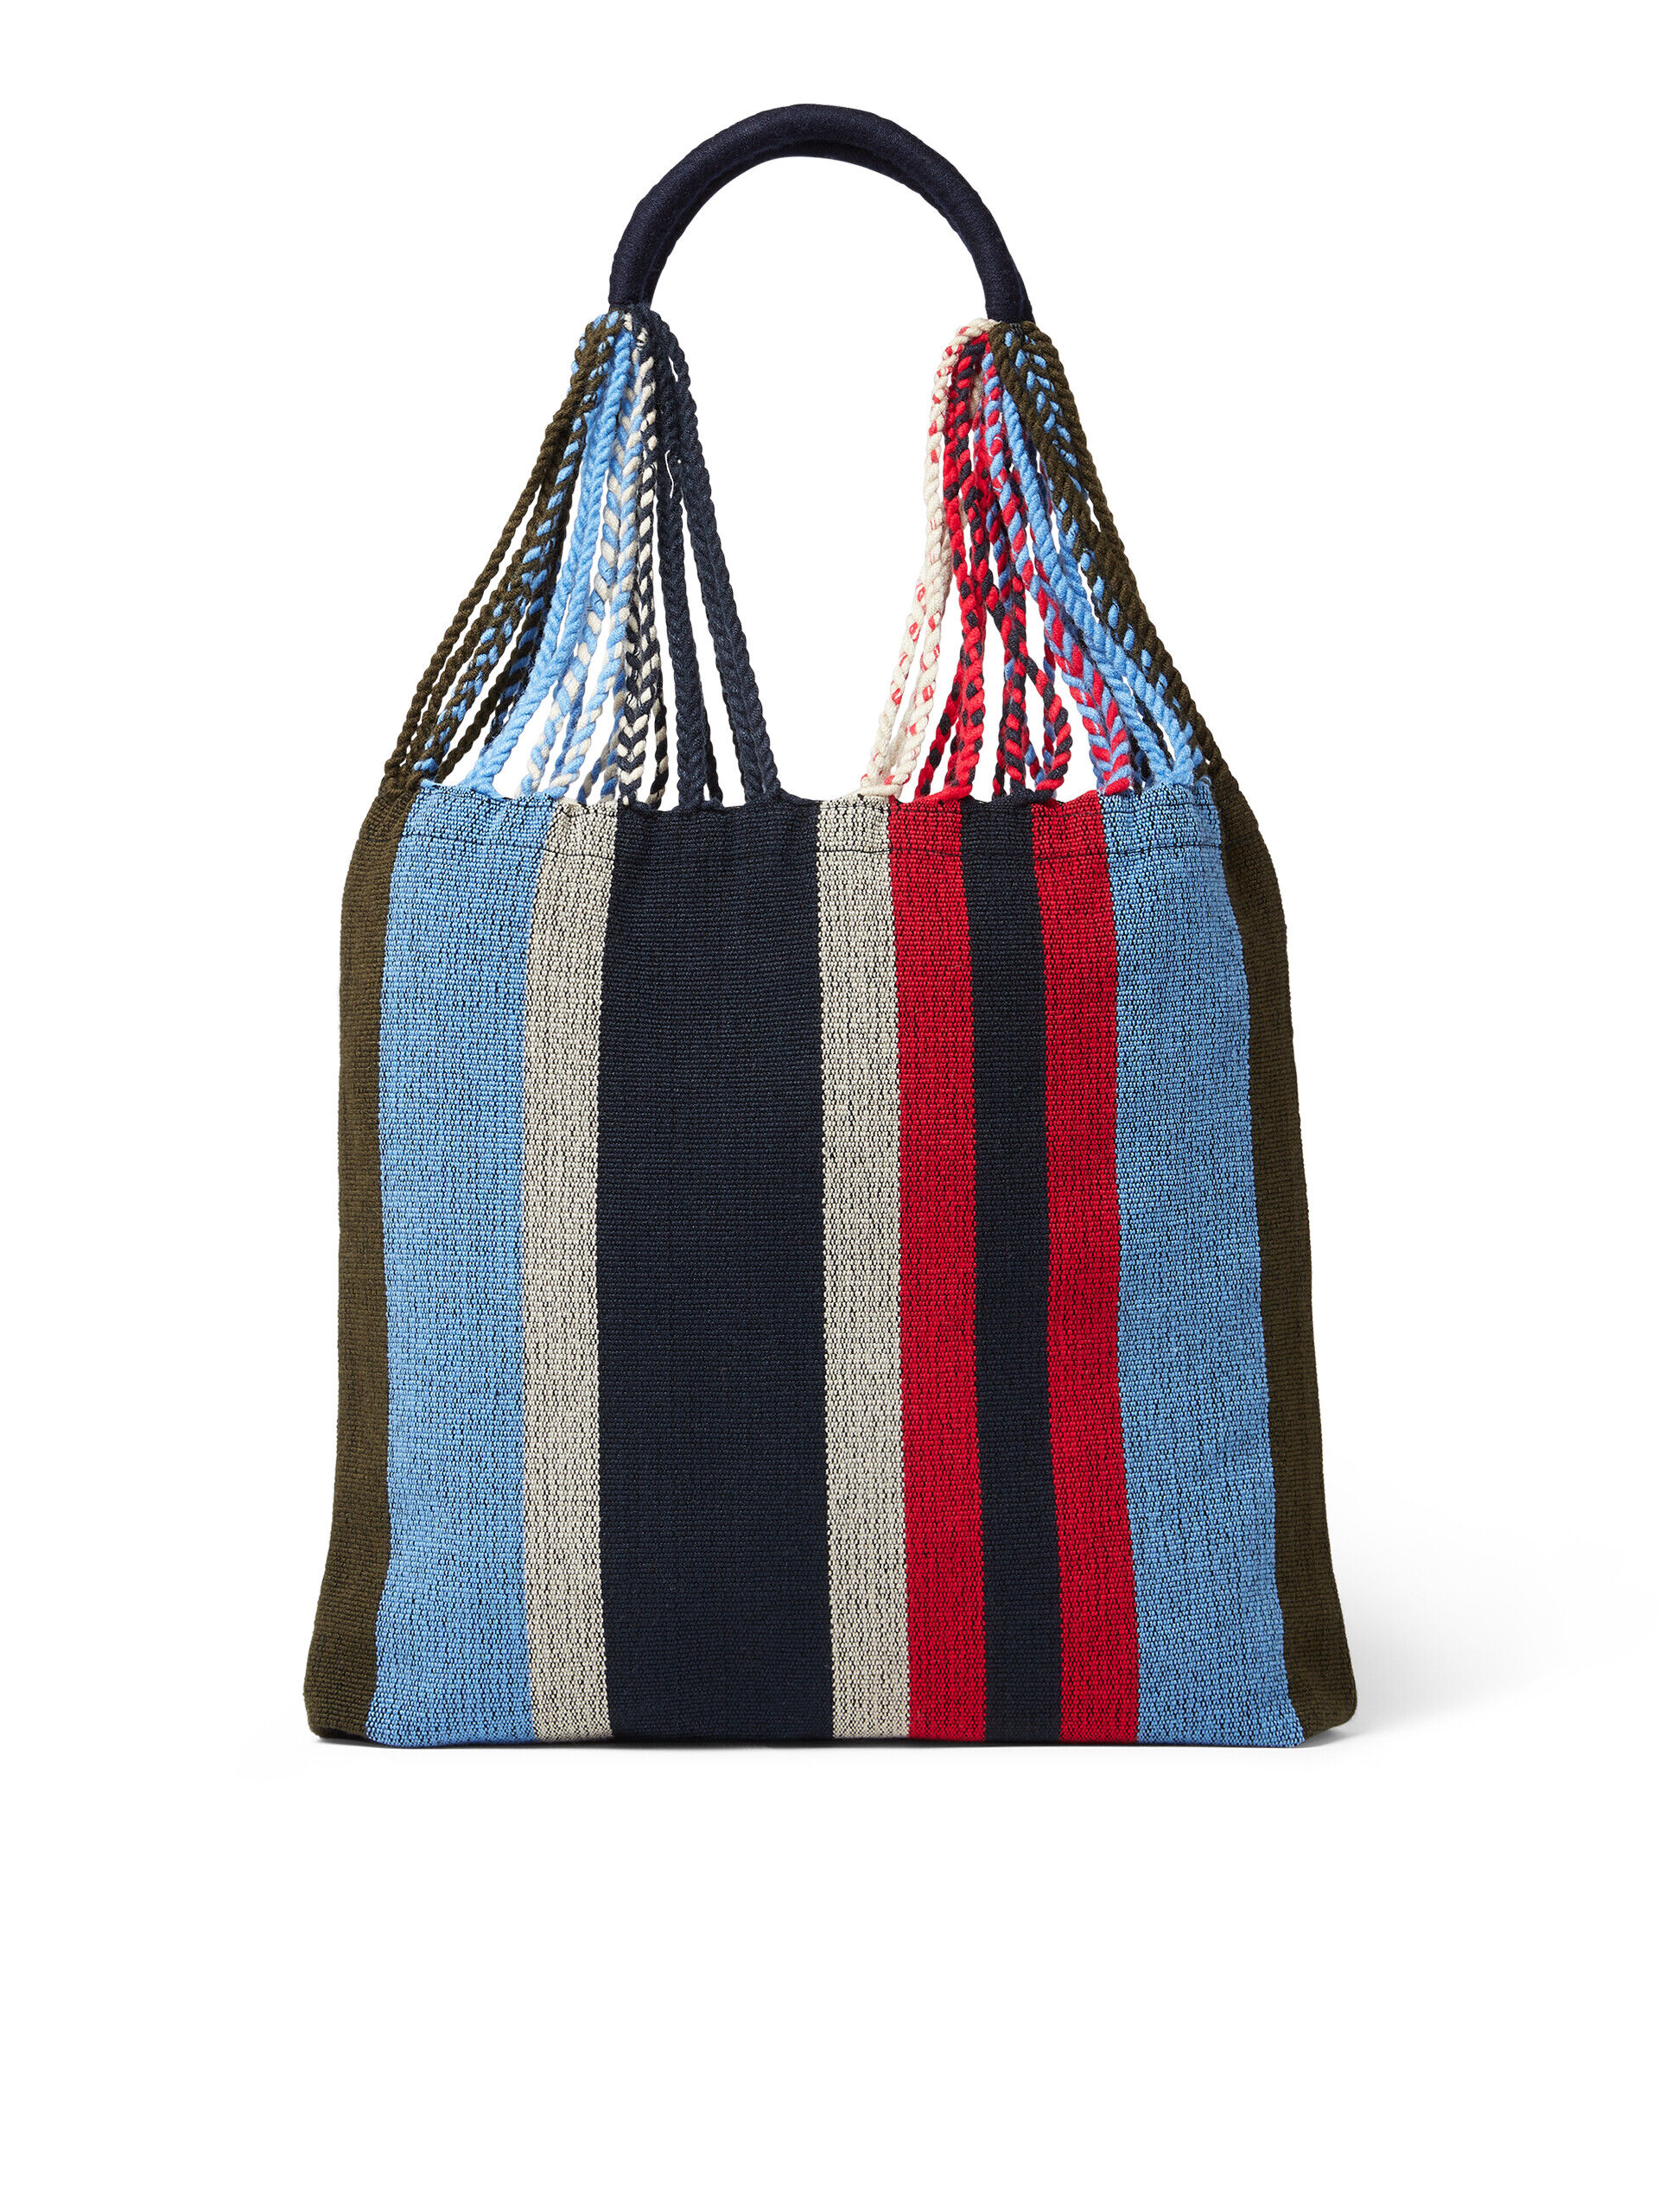 MARNI MARKET HAMMOCK BAG in multicolor pale blue crochet | Marni